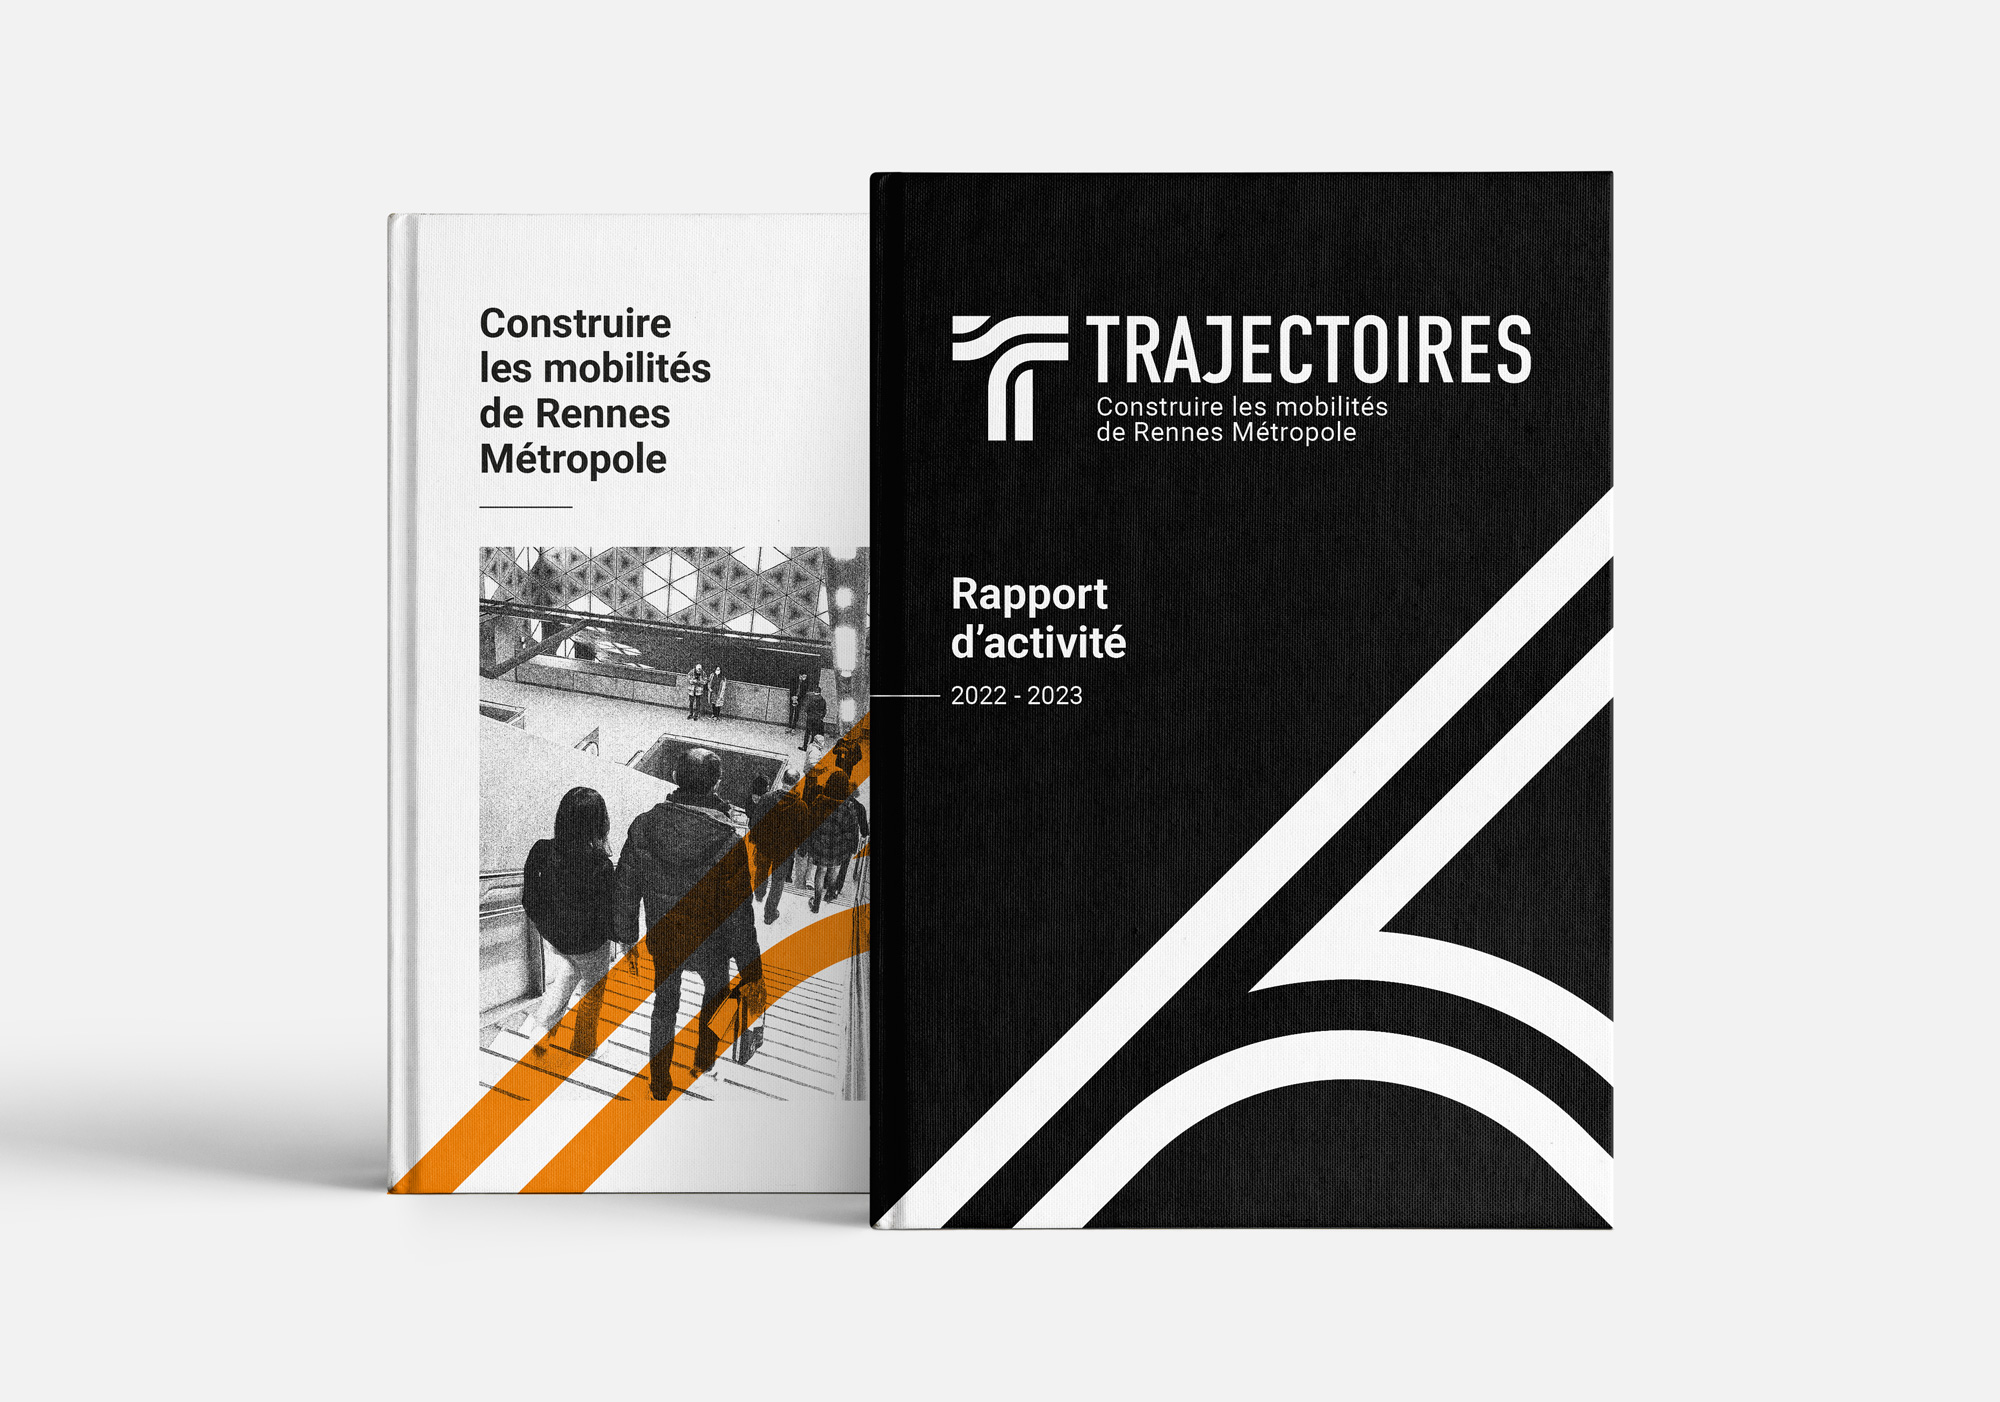 Charte graphique et logotype de Semtcar Trajectoires, acteur majeur de la maîtrise d'ouvrage des transports en commun de la métropole rennaise.